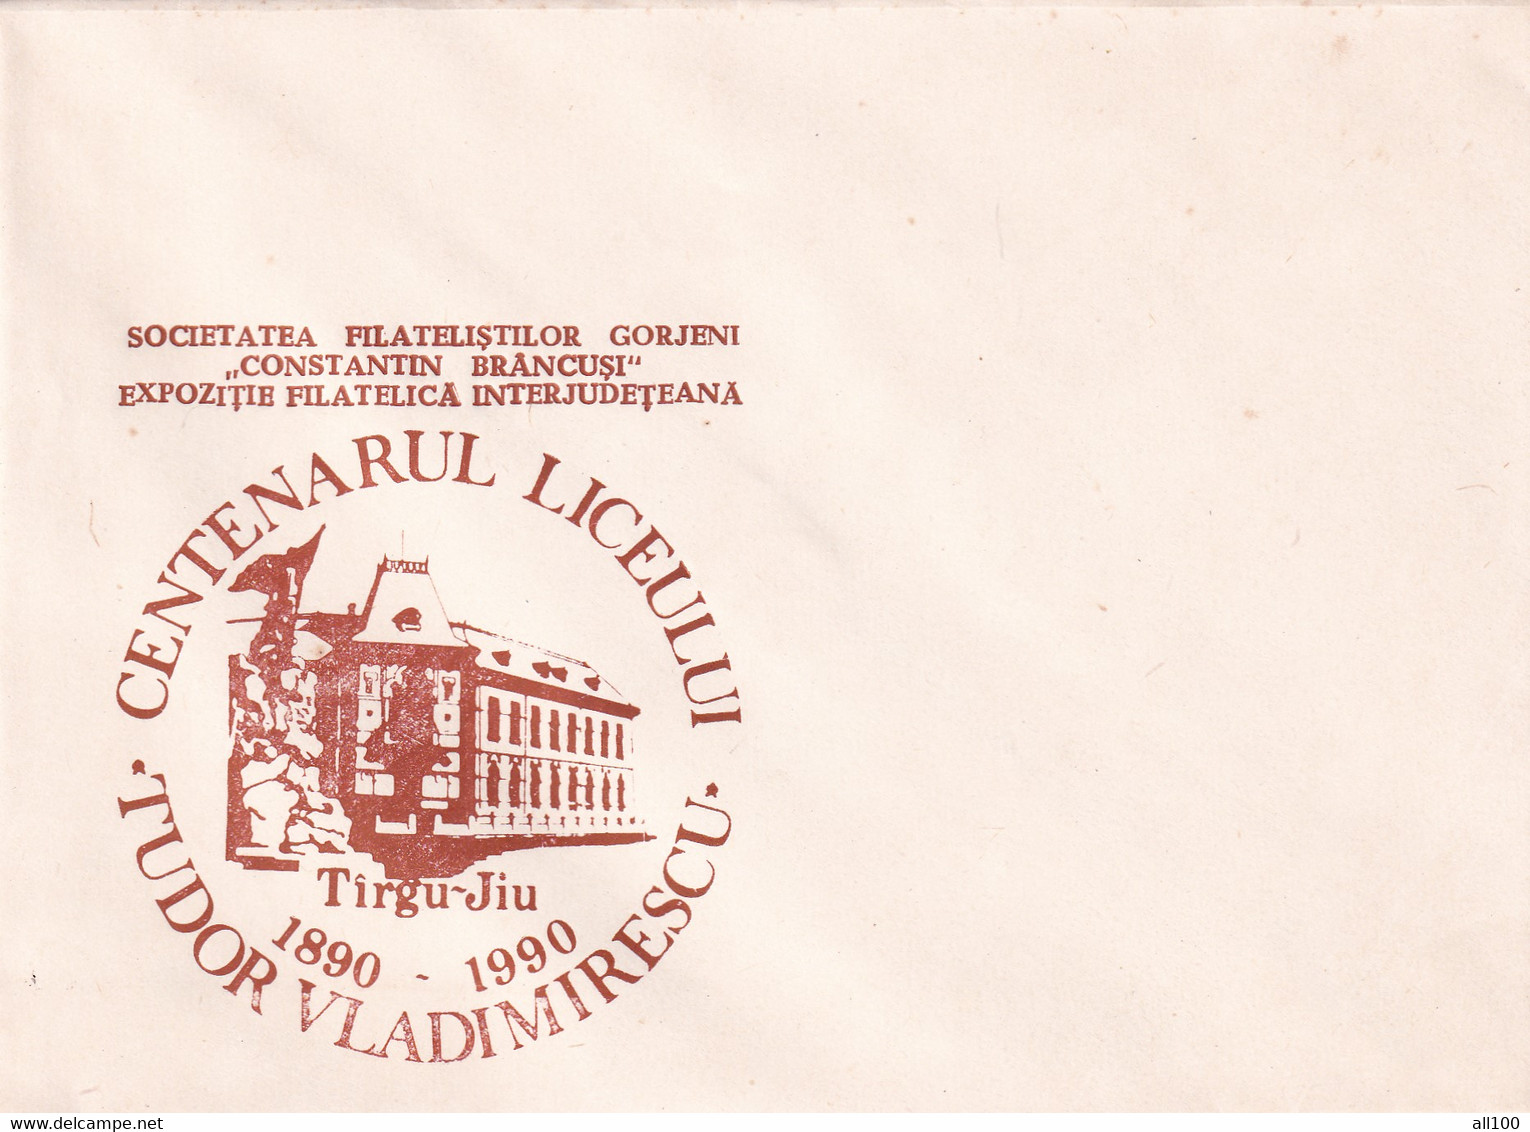 A19350 - CENTENARUL LICEULUI TUDOR VLADIMIRESCU TARGU JIU TIRGU-JIU COVER ENVELOPE UNUSED 1990 ROMANIA - Lettres & Documents